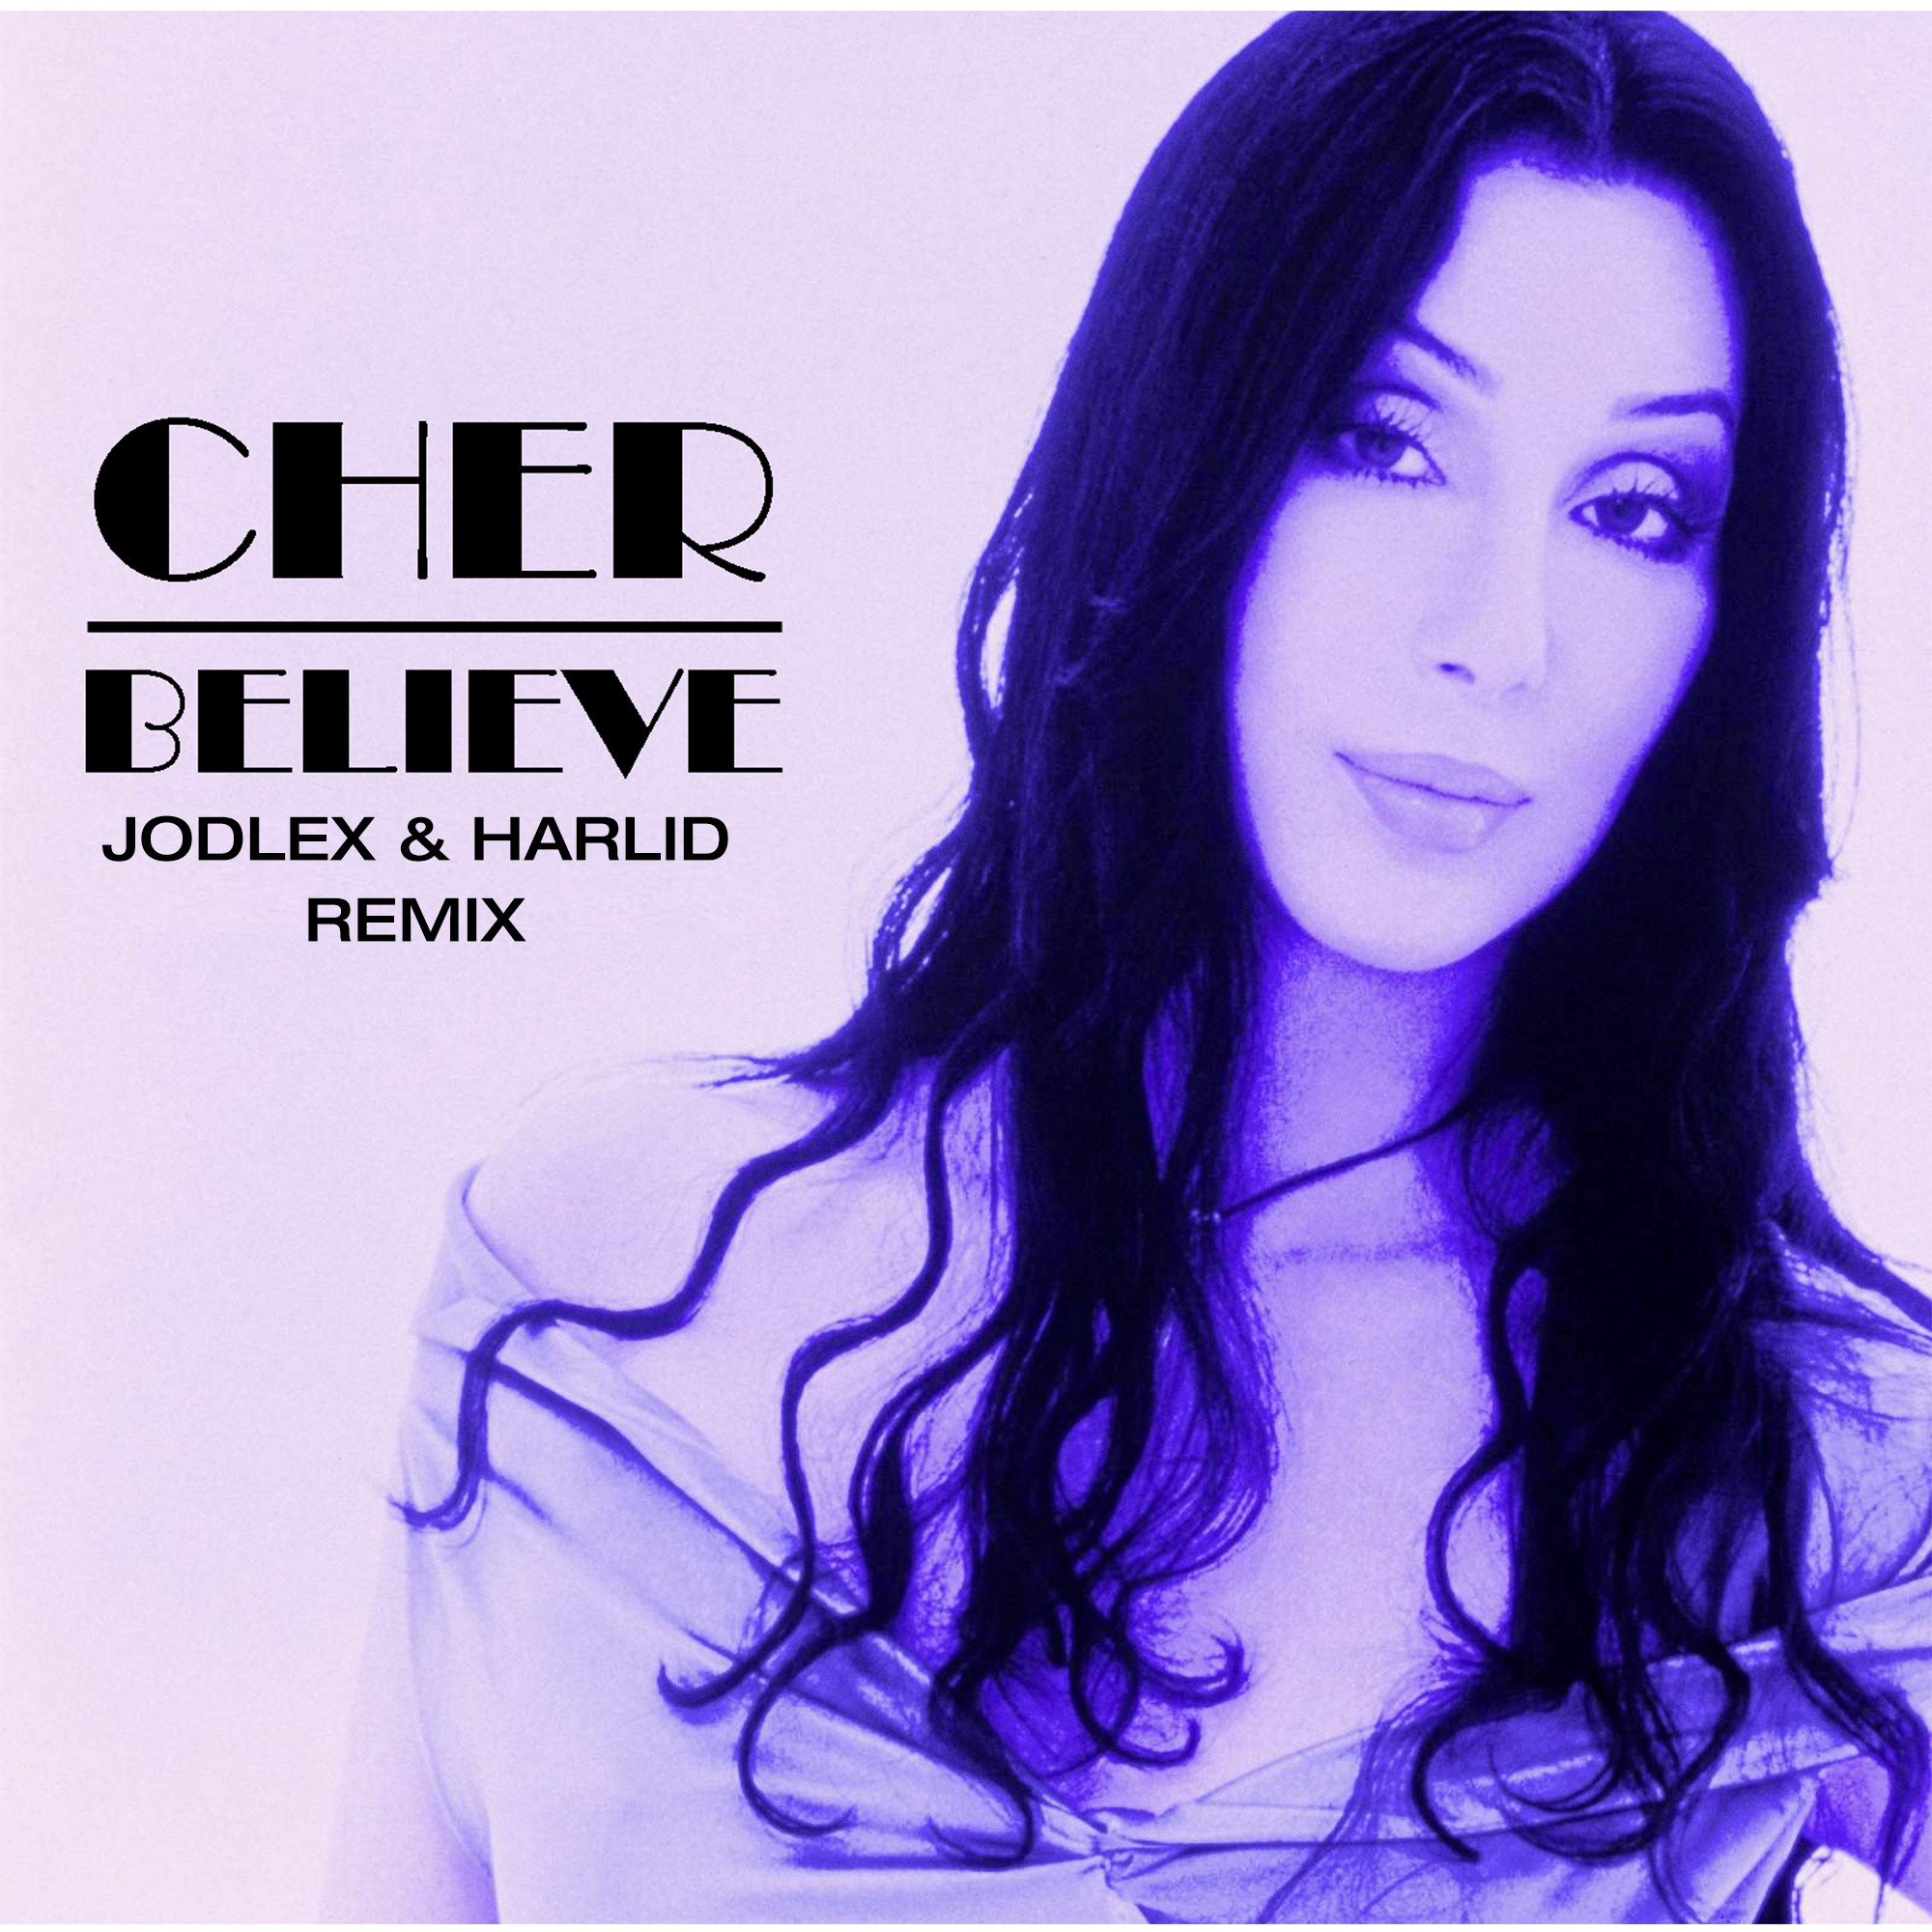 Шер треки. Cher обложки альбомов. Шер певица believe. Cher 1998. Cher believe обложка.